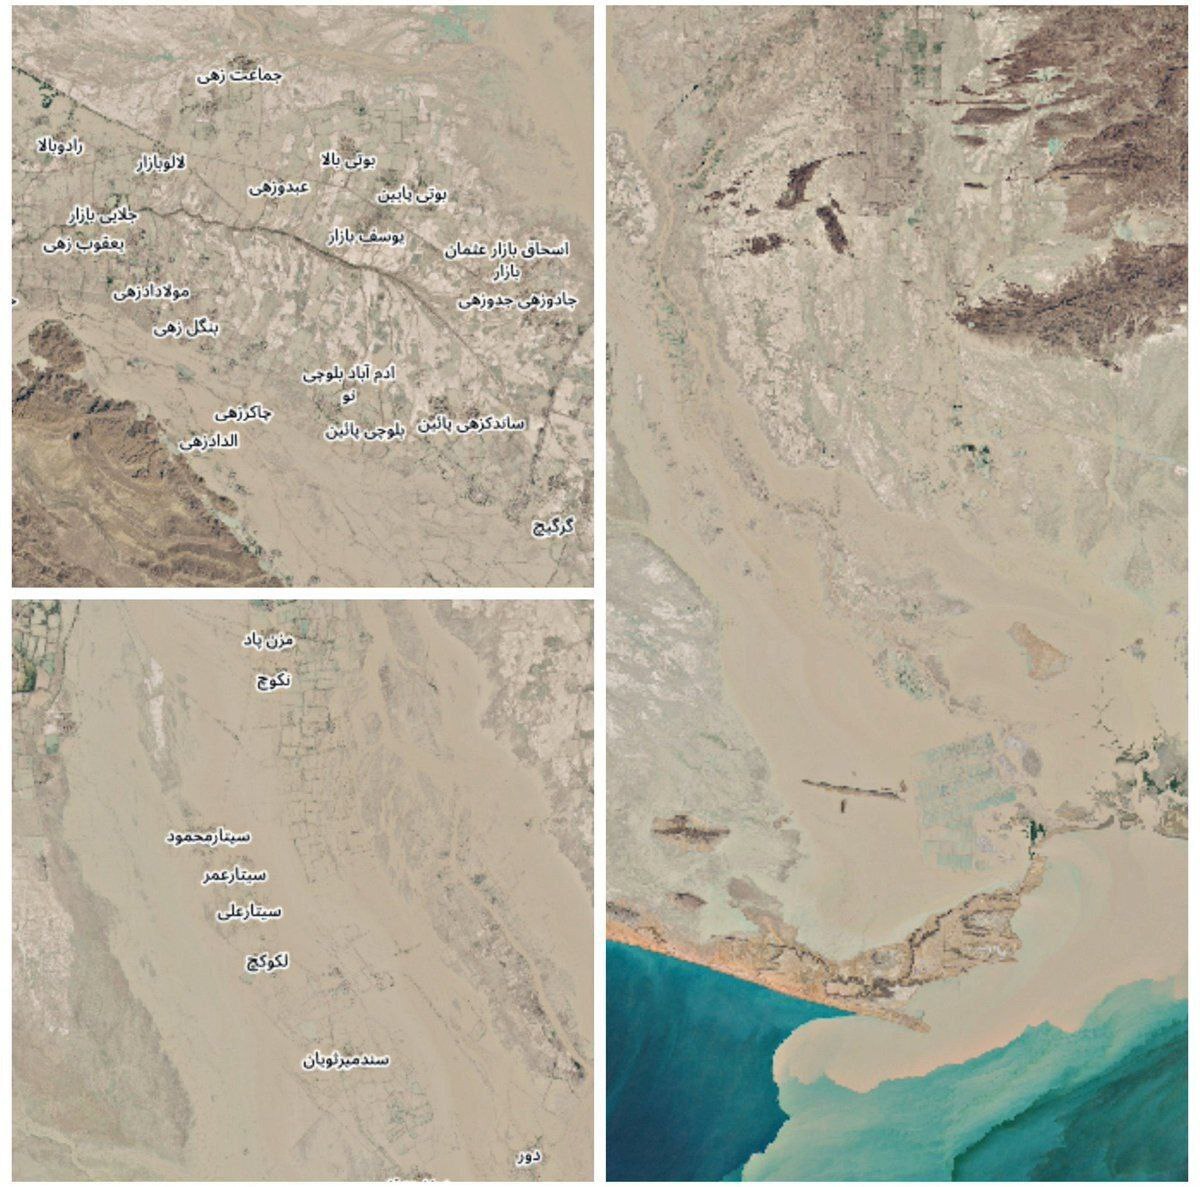 تصویر هوایی از وضعیت وخیم سیستان و بلوچستان